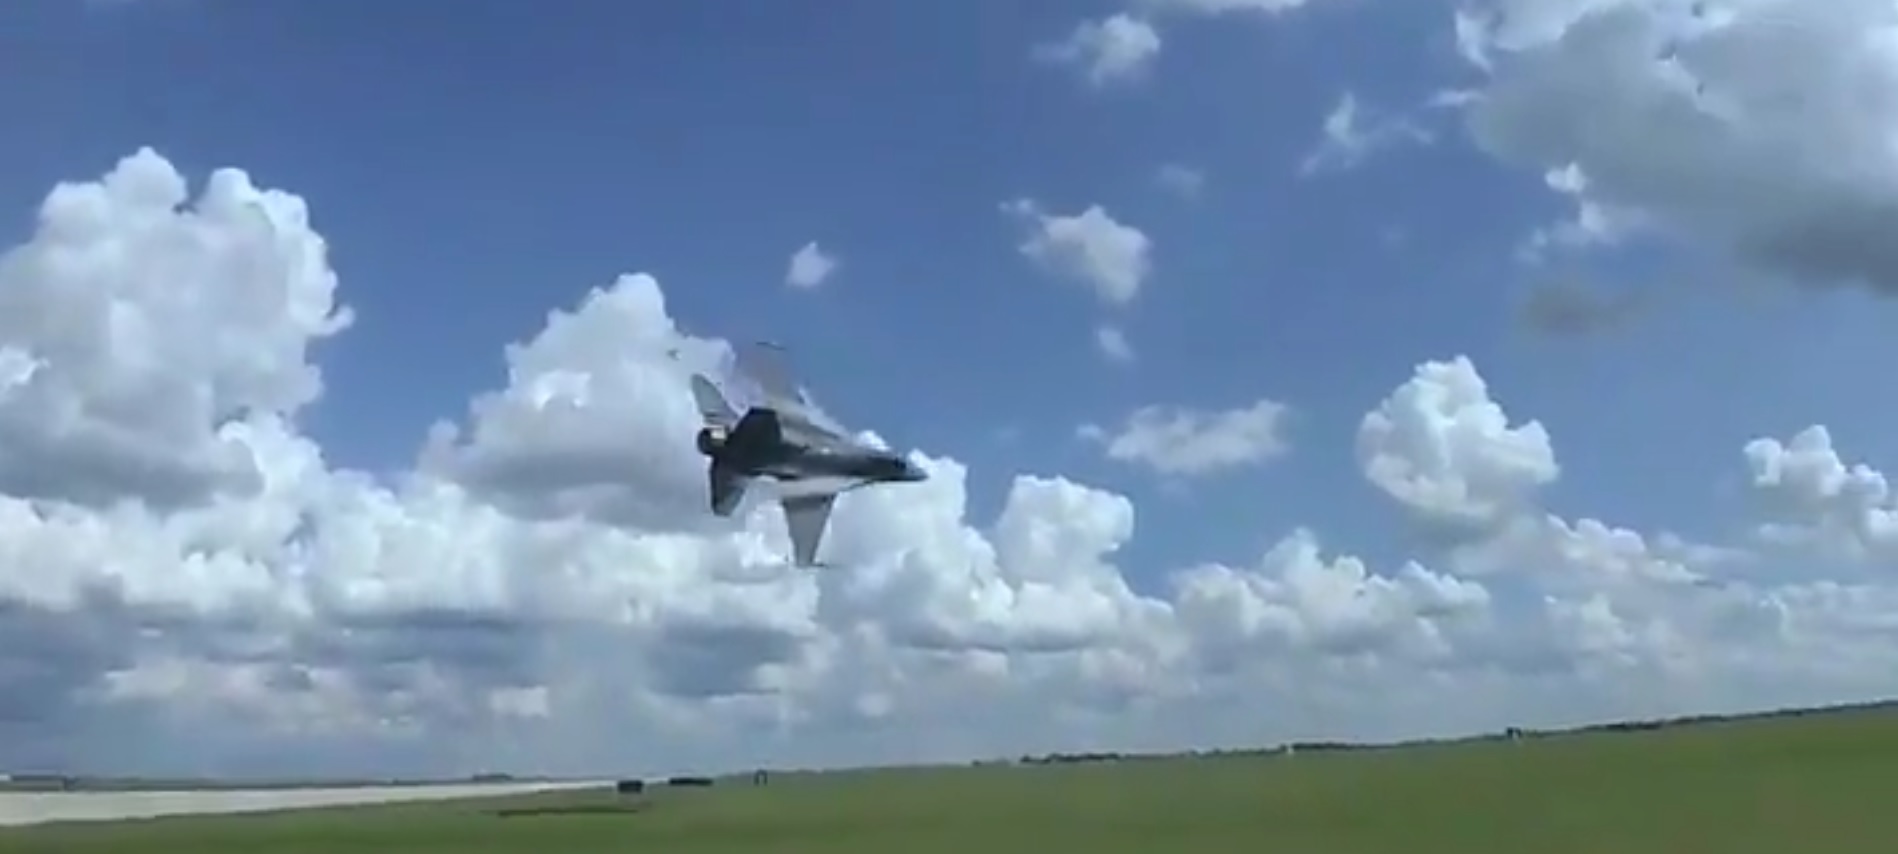 Η τρομακτική στιγμή που F-16 πραγματοποιεί πτήση ελάχιστα μέτρα από το έδαφος [vid]